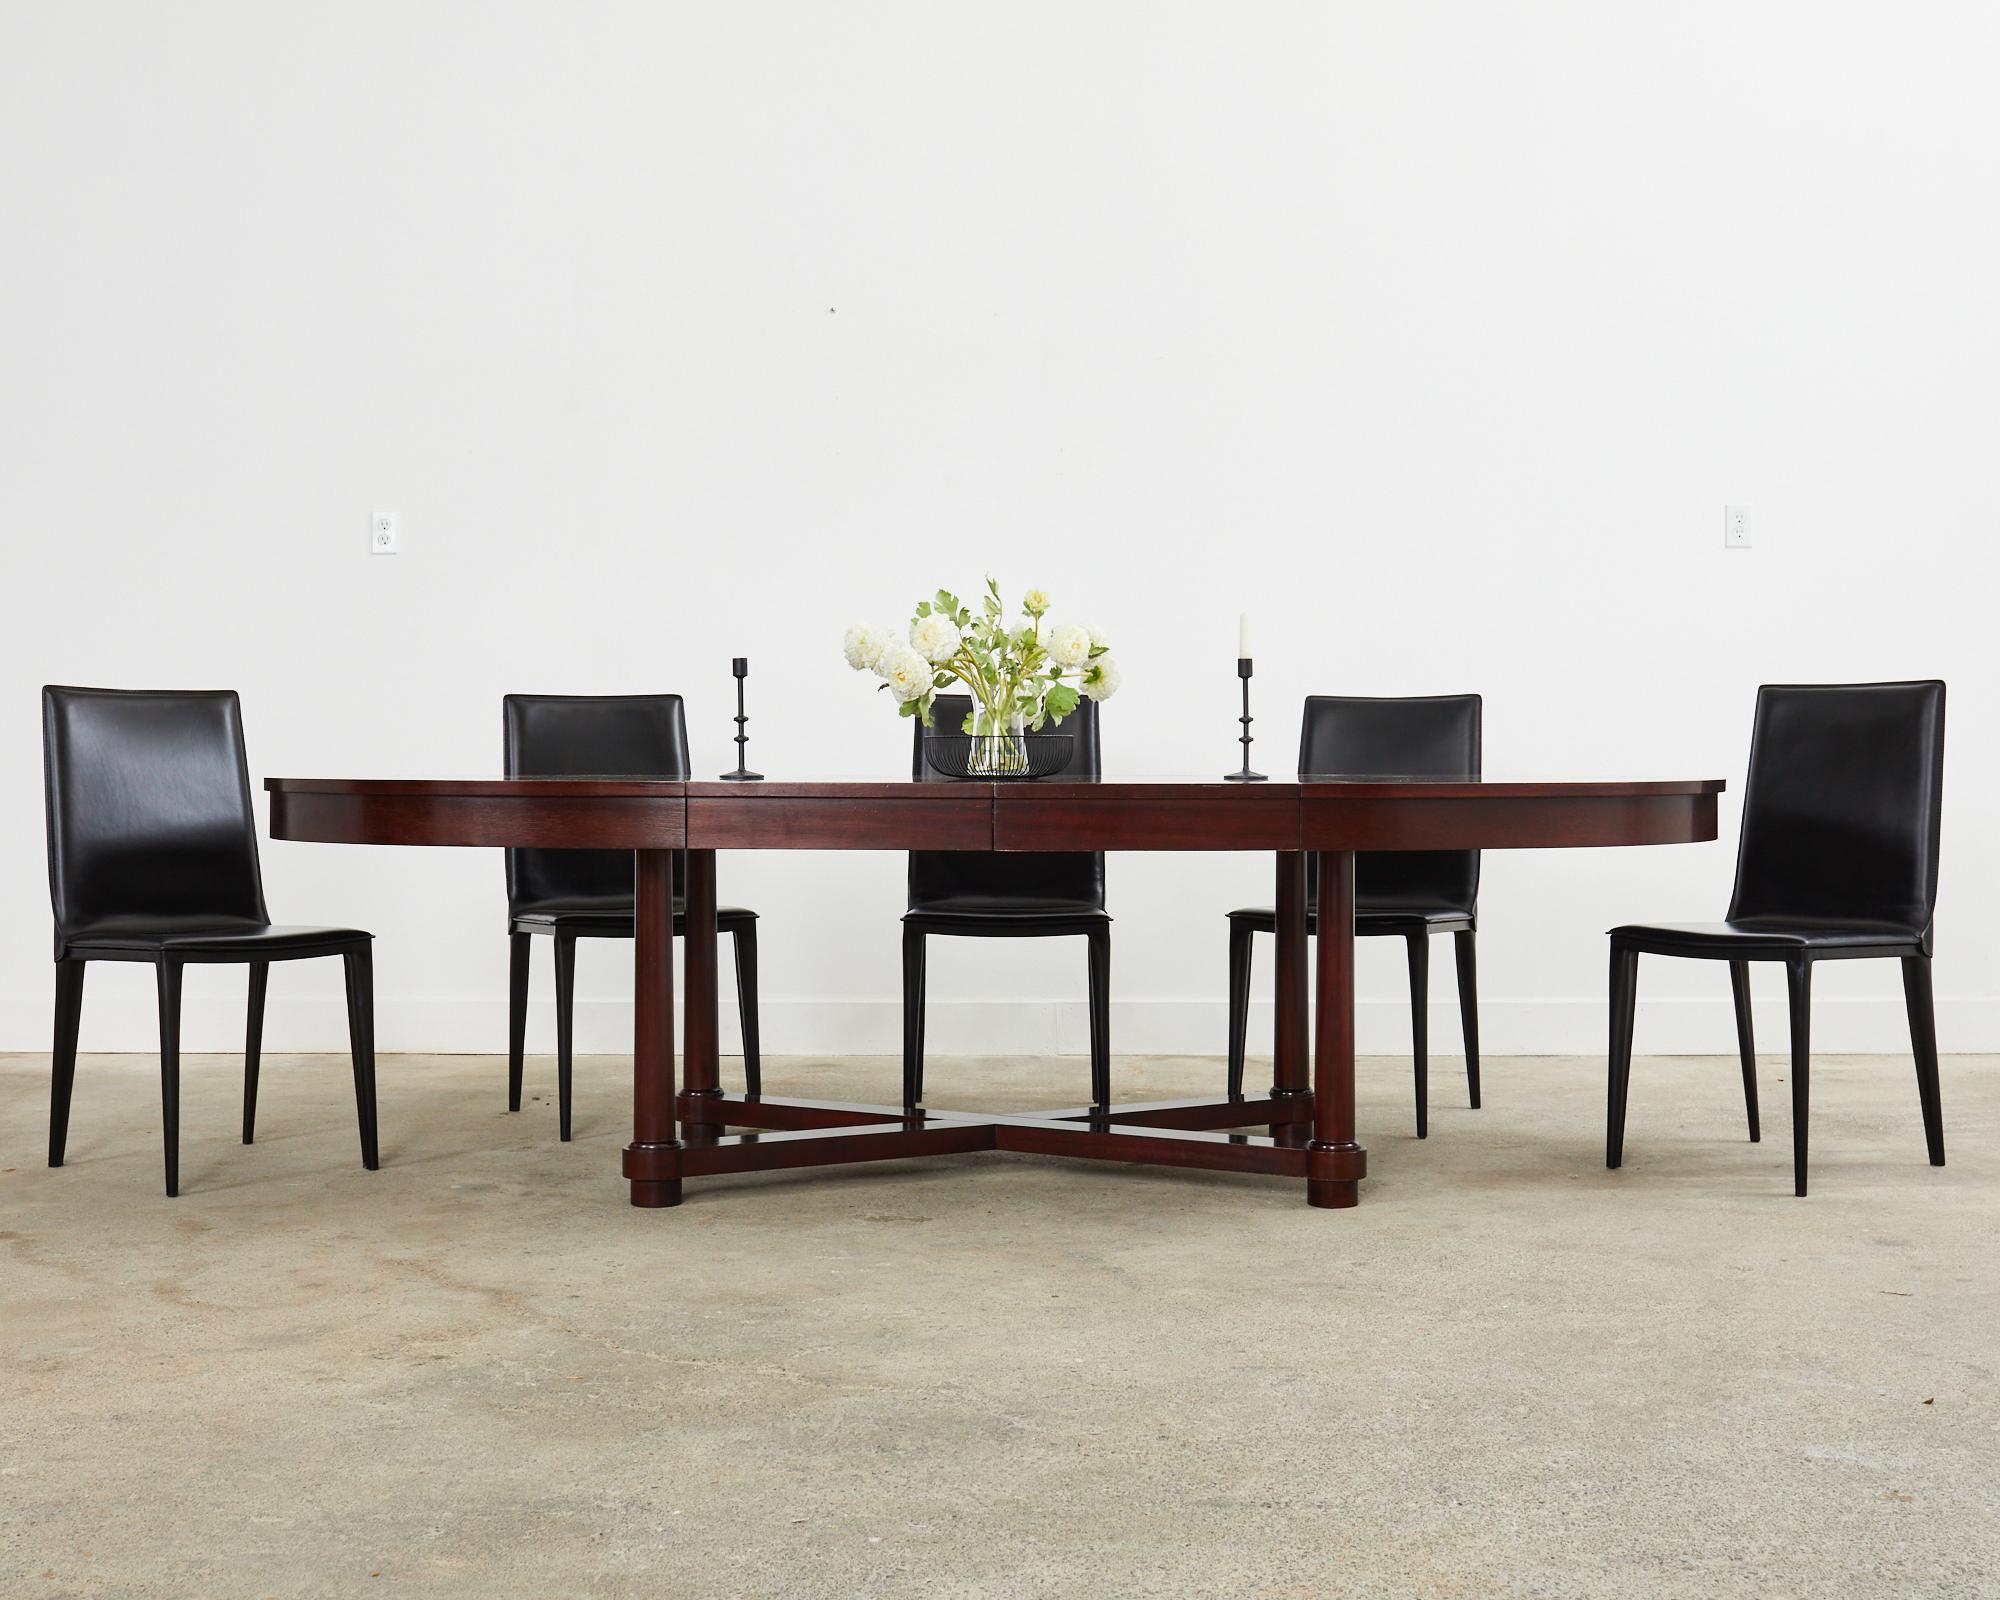 Ensemble spectaculaire de huit chaises de salle à manger en cuir noir surpiqué, réalisées à la manière et dans le style de Mario Bellini. Les chaises sont conçues en Italie par Michele di Fonzo pour Frag. Le modèle numéro 613, connu sous le nom de